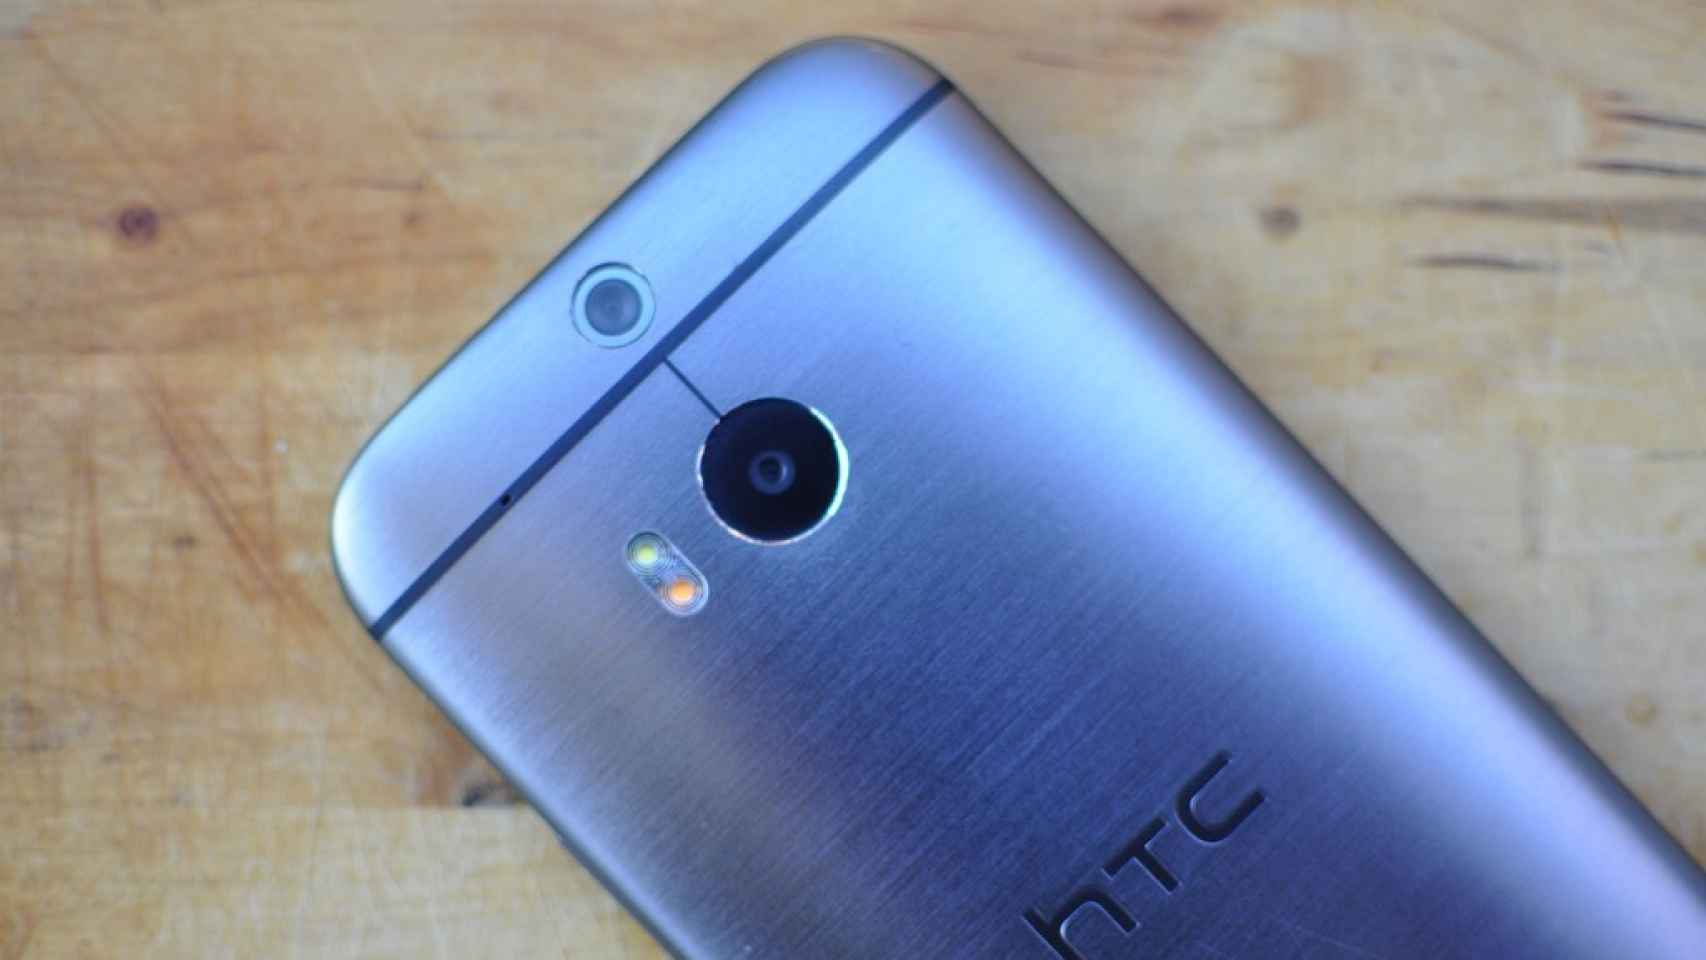 HTC One M8 EYE filtrado con cámara dual de 13MP, adiós Ultrapíxeles